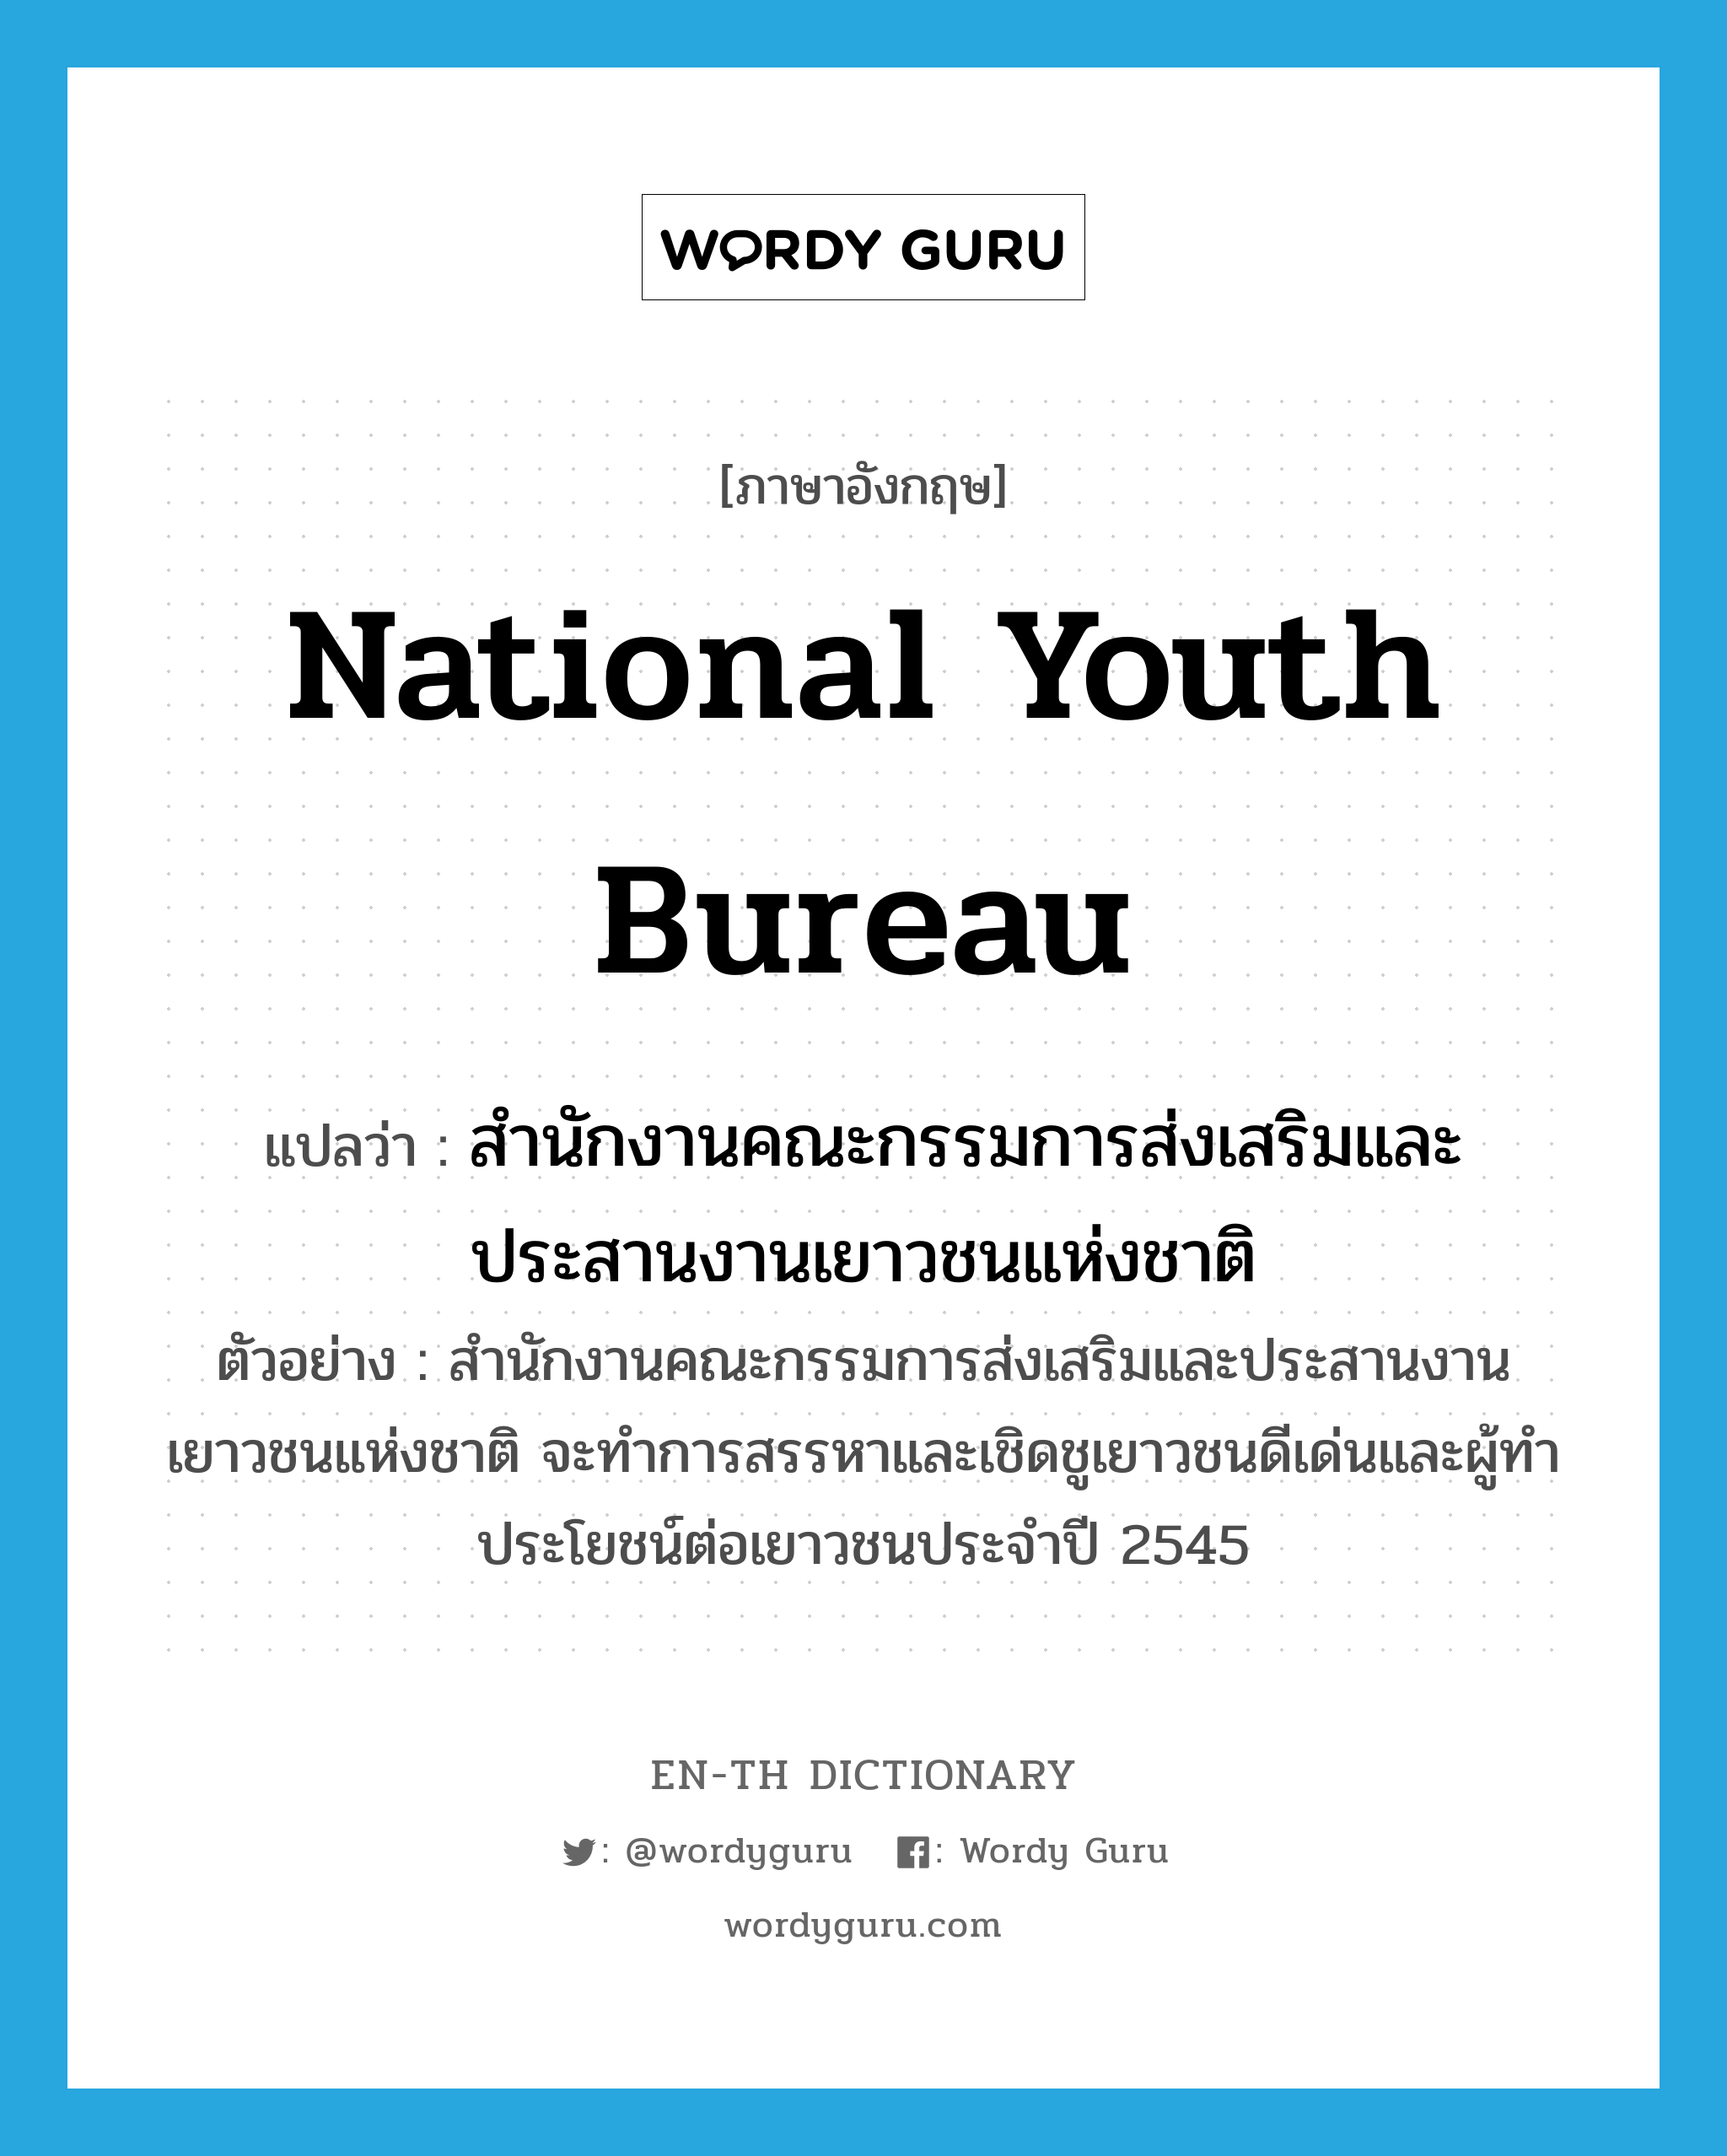 สำนักงานคณะกรรมการส่งเสริมและประสานงานเยาวชนแห่งชาติ ภาษาอังกฤษ?, คำศัพท์ภาษาอังกฤษ สำนักงานคณะกรรมการส่งเสริมและประสานงานเยาวชนแห่งชาติ แปลว่า National Youth Bureau ประเภท N ตัวอย่าง สำนักงานคณะกรรมการส่งเสริมและประสานงานเยาวชนแห่งชาติ จะทำการสรรหาและเชิดชูเยาวชนดีเด่นและผู้ทำประโยชน์ต่อเยาวชนประจำปี 2545 หมวด N